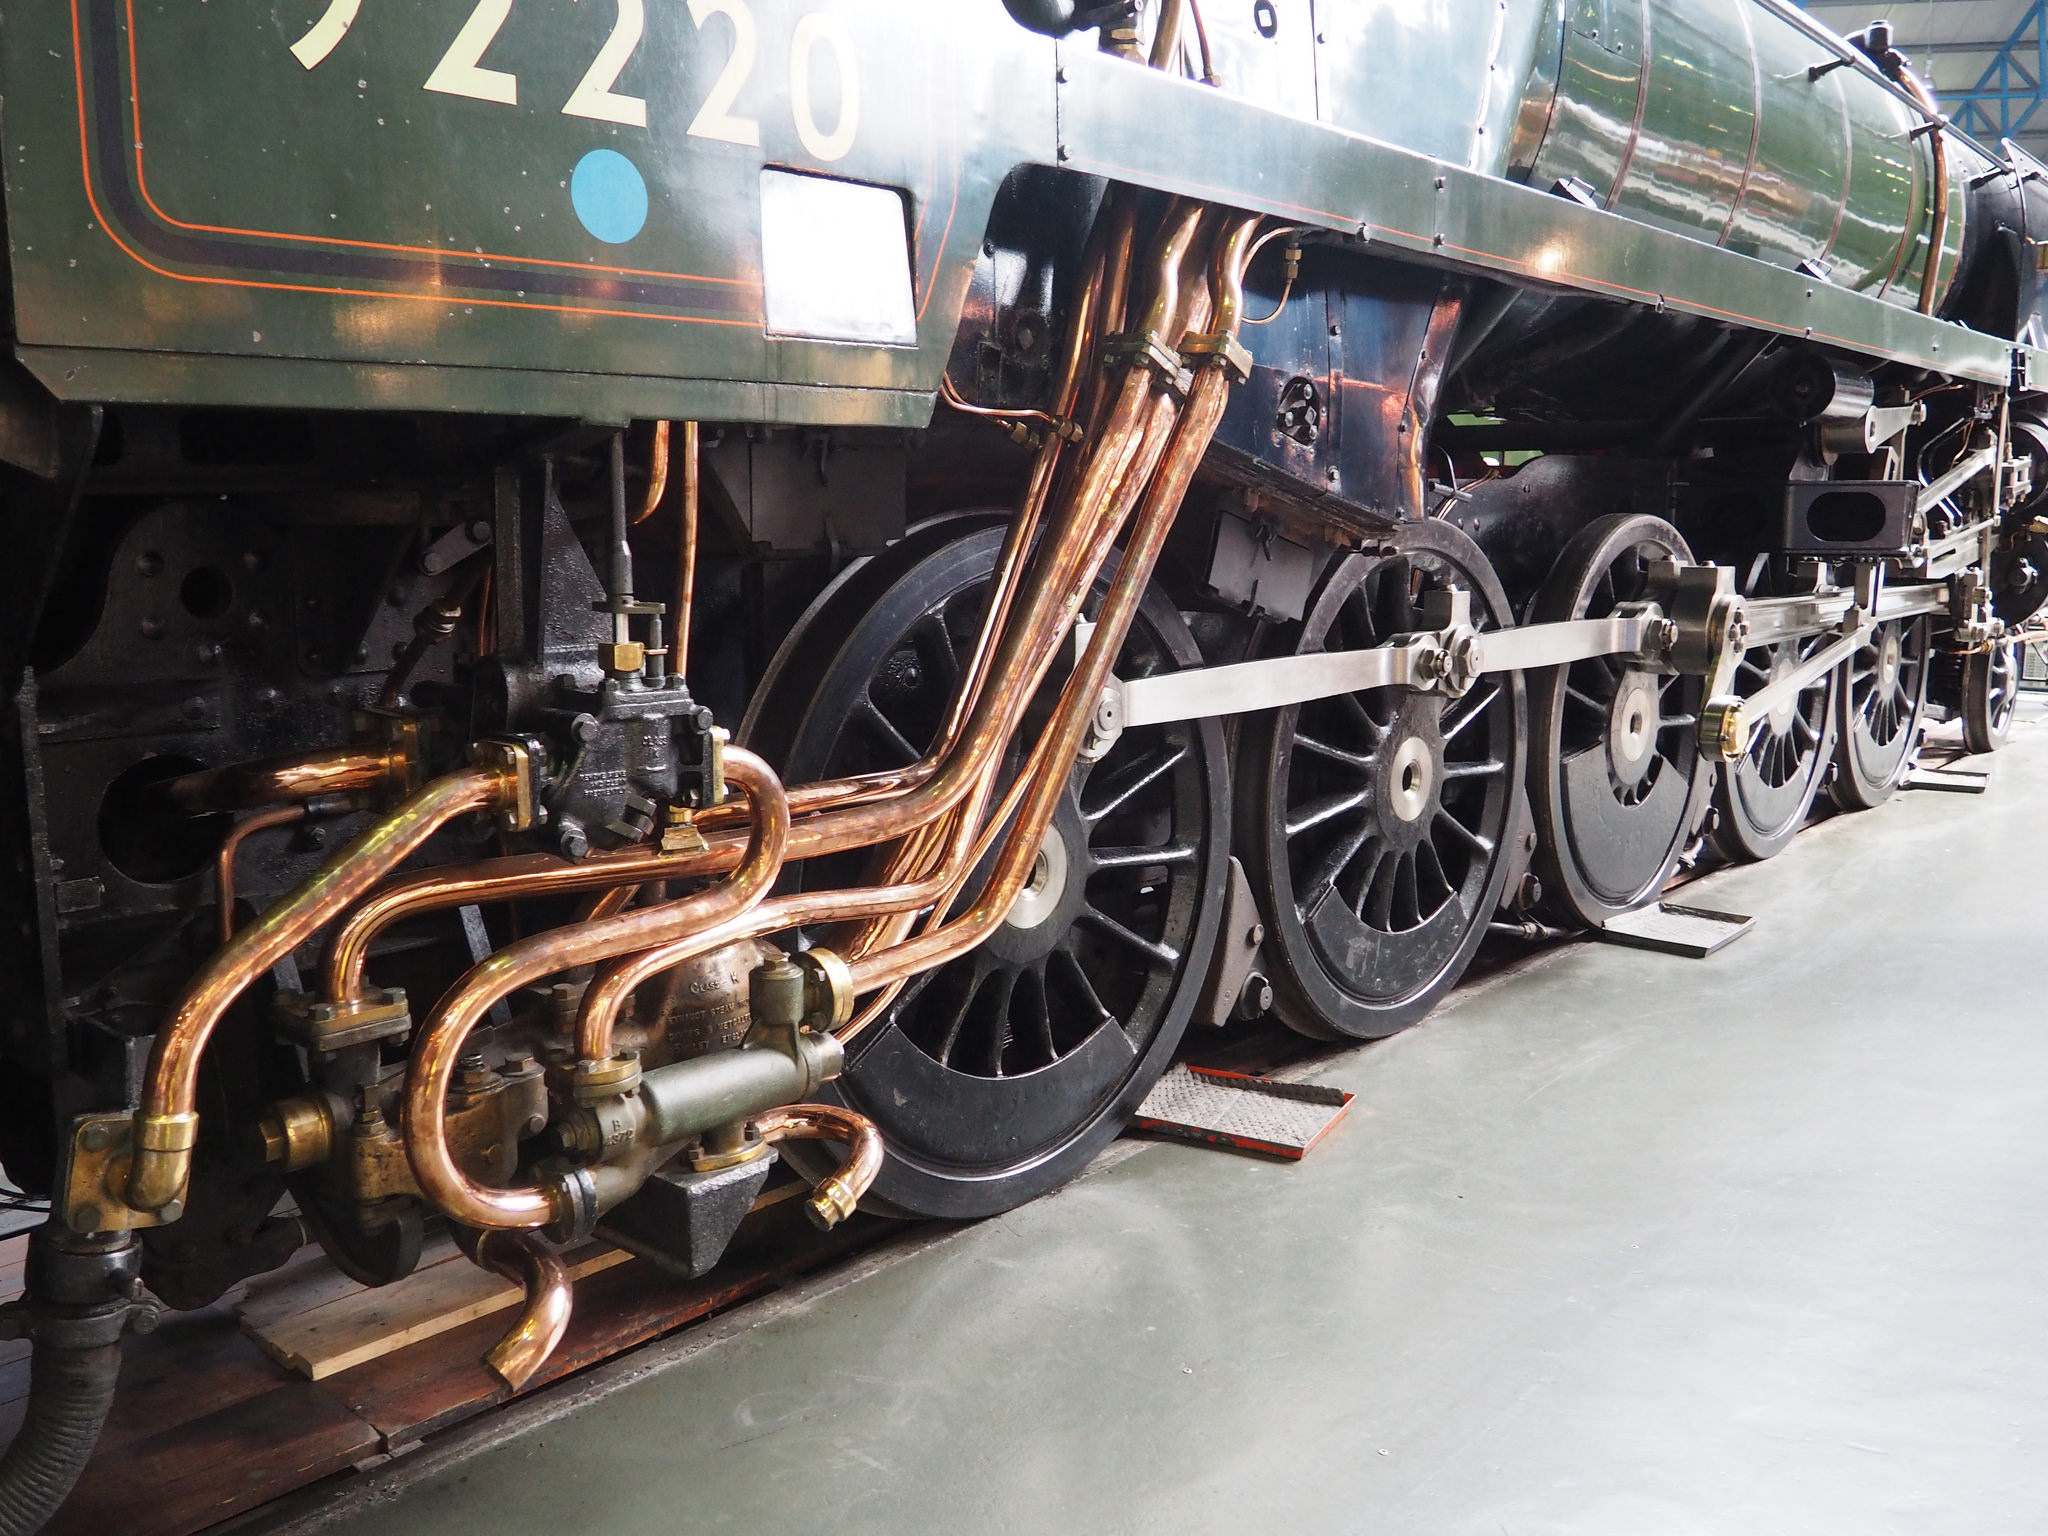 national railway museum1 National Railway Museum in York